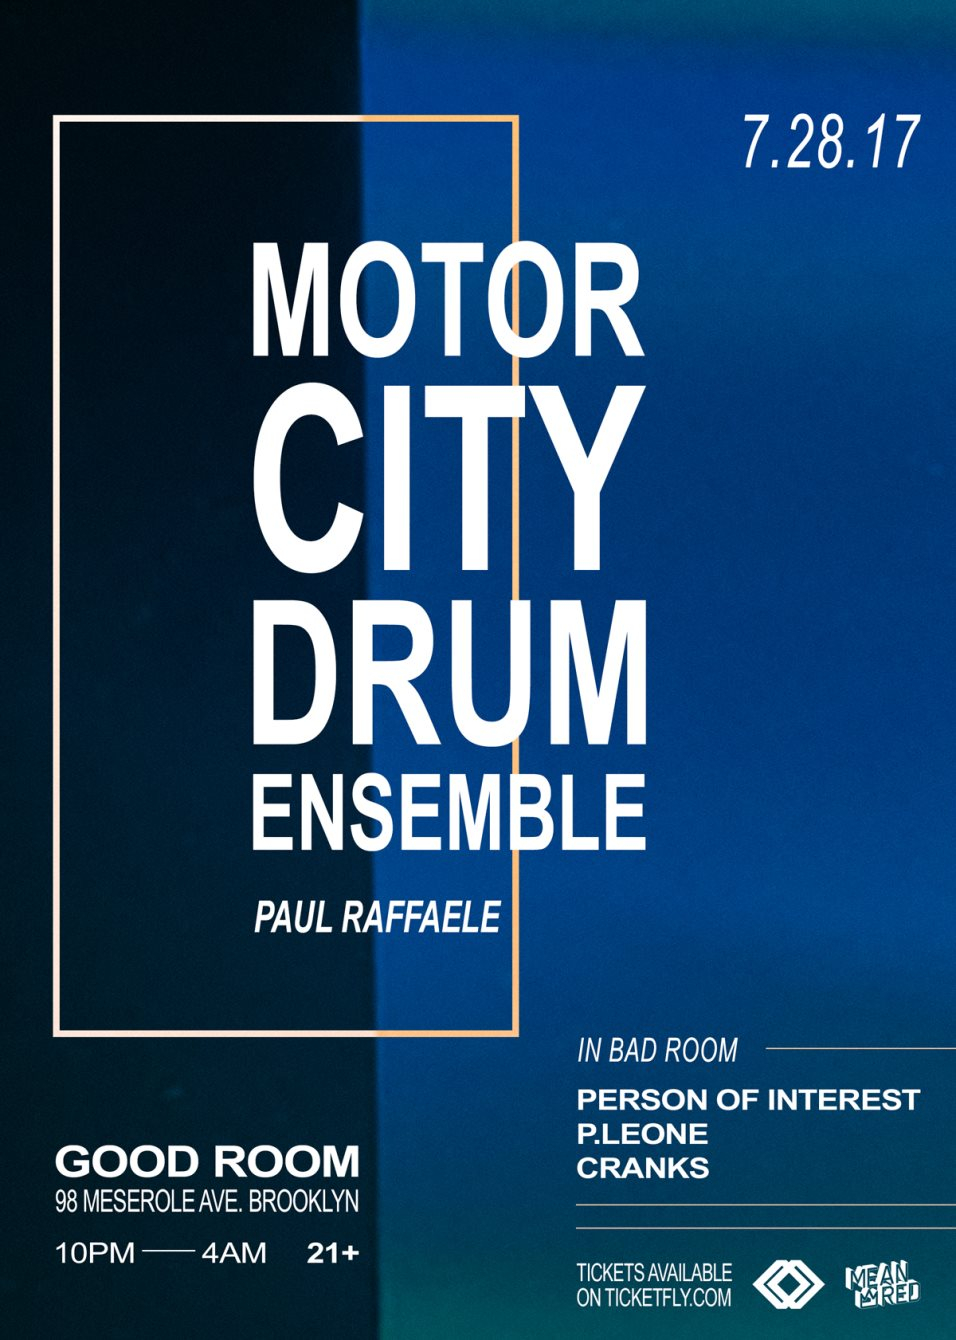 Motor City Drum Ensemble - Flyer front